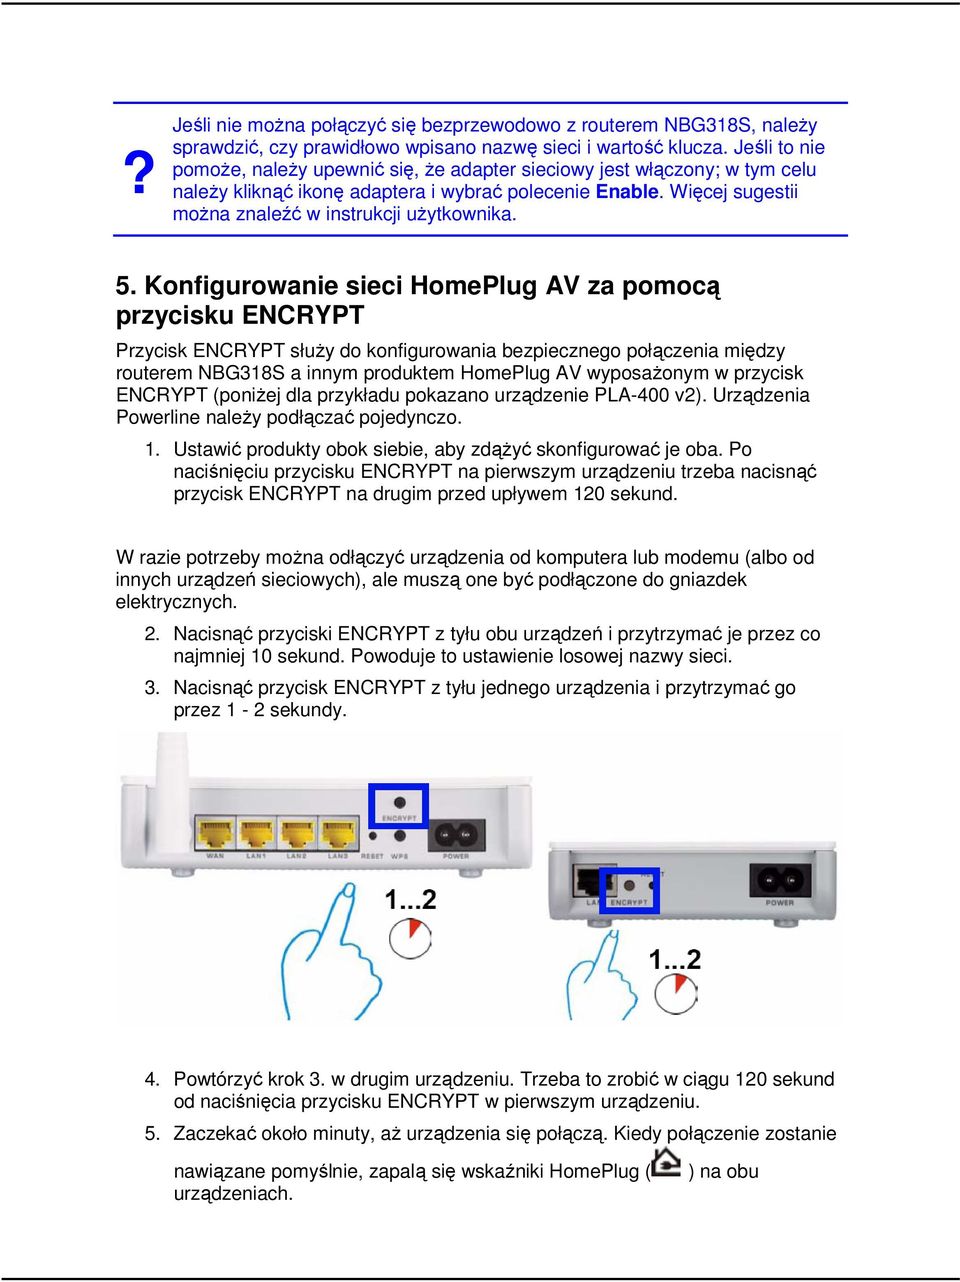 5. Konfigurowanie sieci HomePlug AV za pomocą przycisku ENCRYPT Przycisk ENCRYPT służy do konfigurowania bezpiecznego połączenia między routerem NBG318S a innym produktem HomePlug AV wyposażonym w